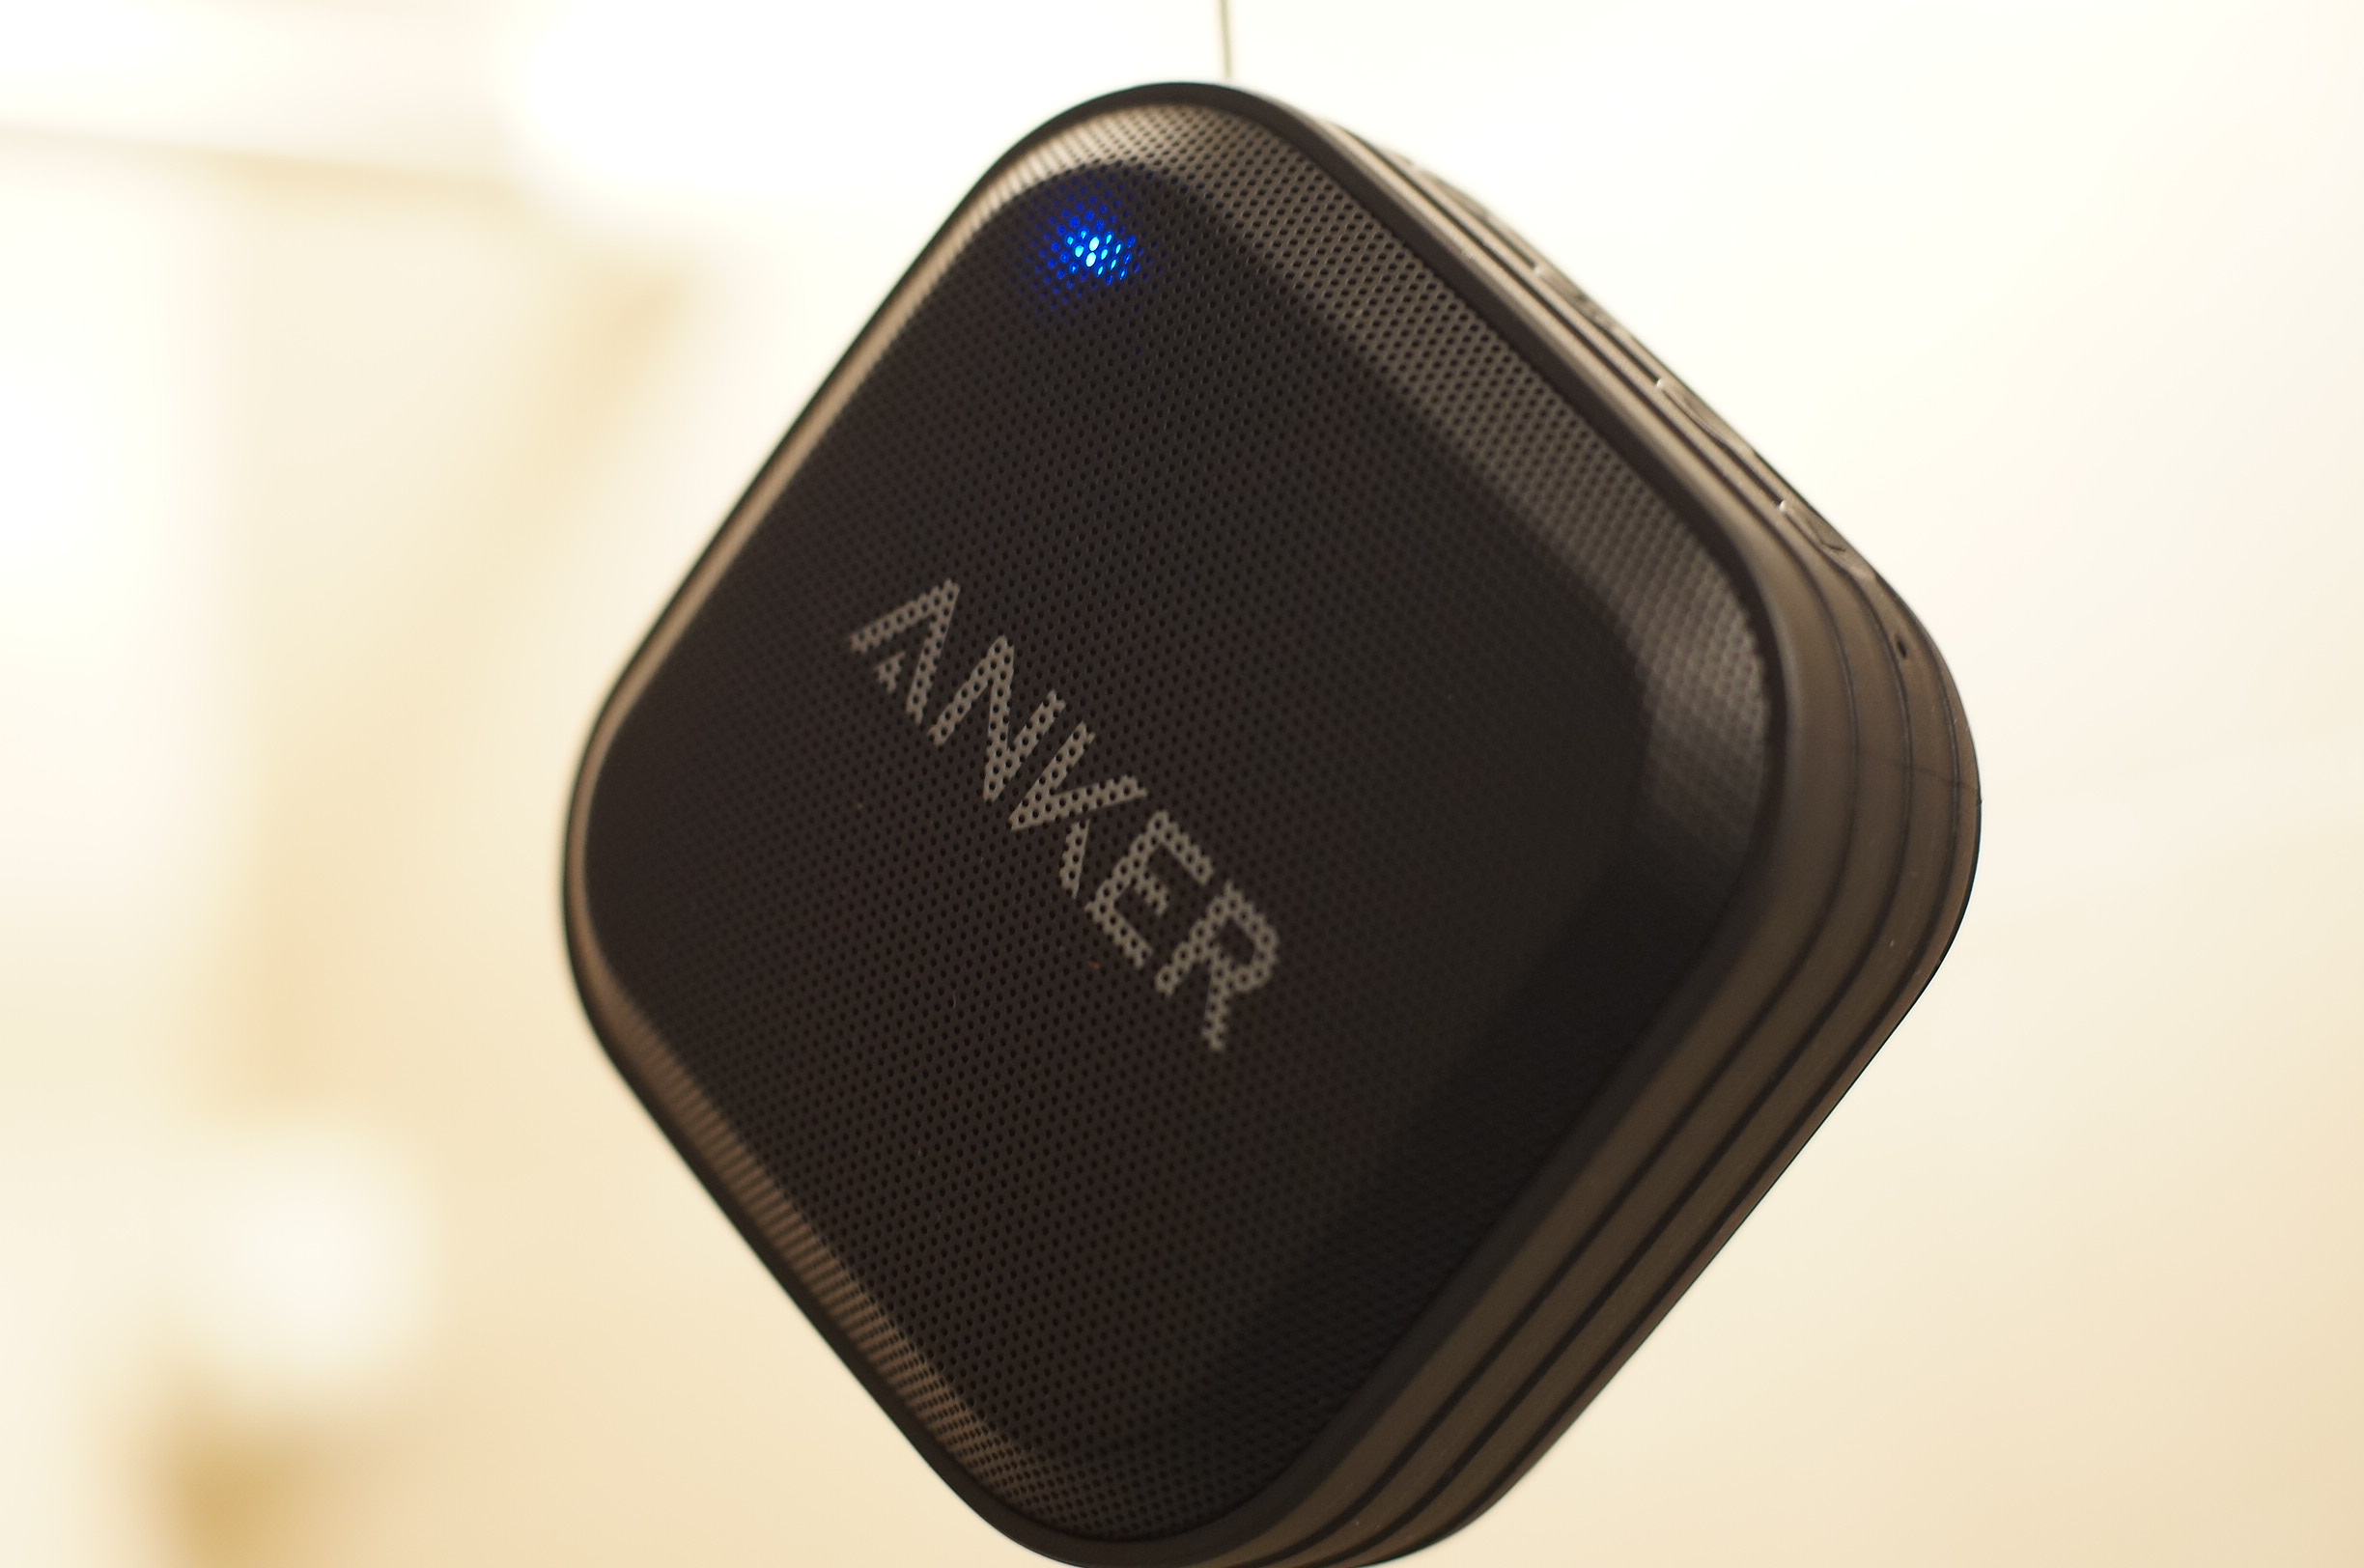 買って実感!Anker SoundCore Sport 防水Bluetoothスピーカーがとてもいい! - モノ好き。ブログ